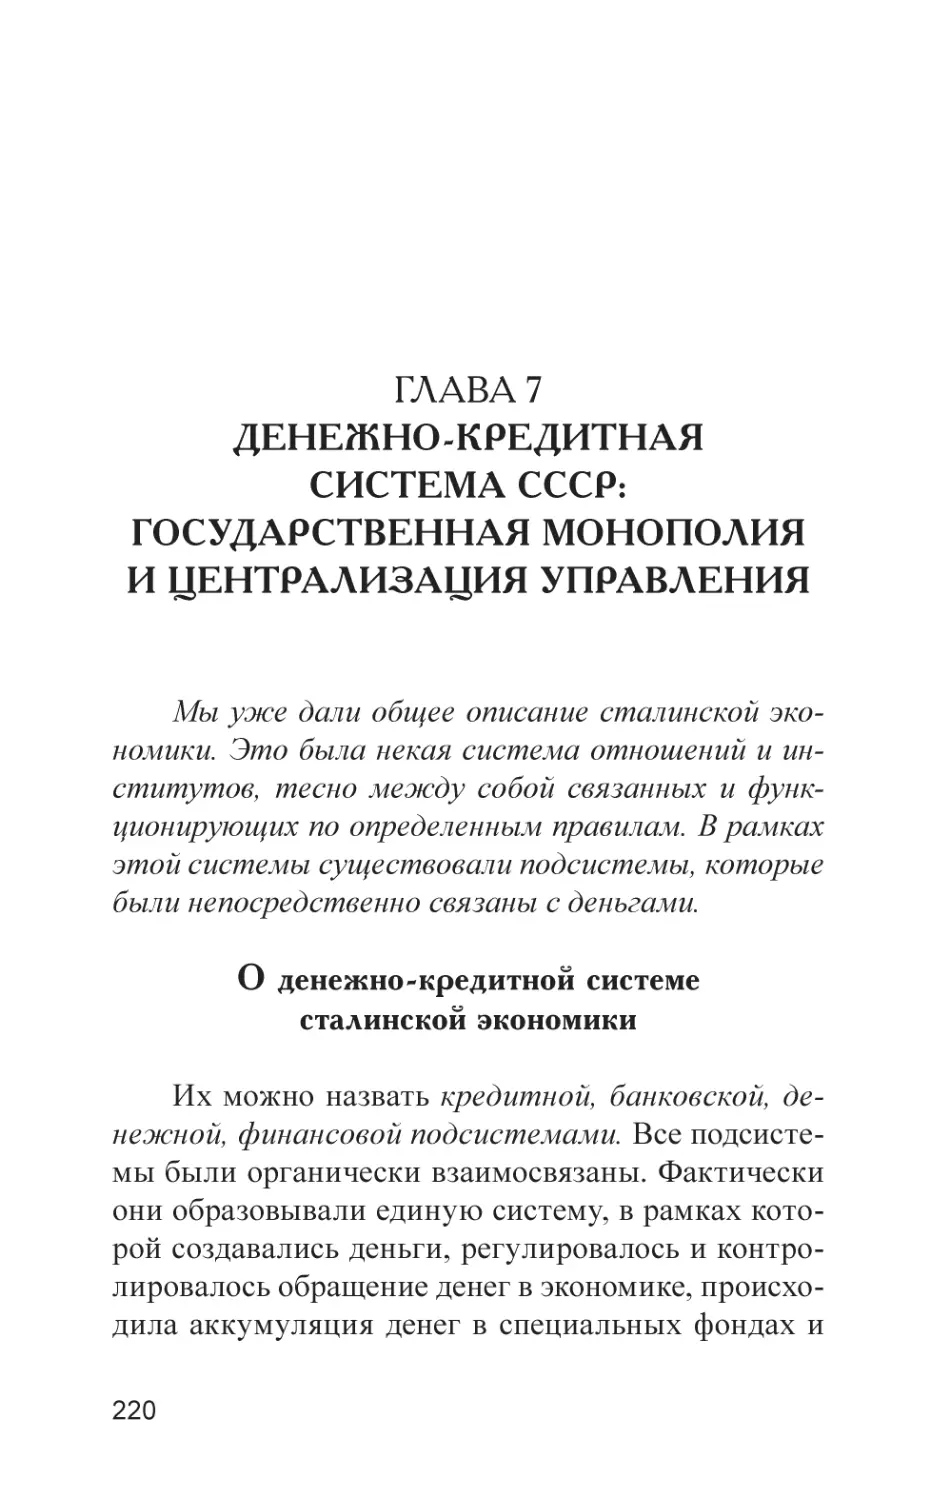 Глава 7. Денежно-кредитная система СССР
О денежно-кредитной системе сталинской экономики